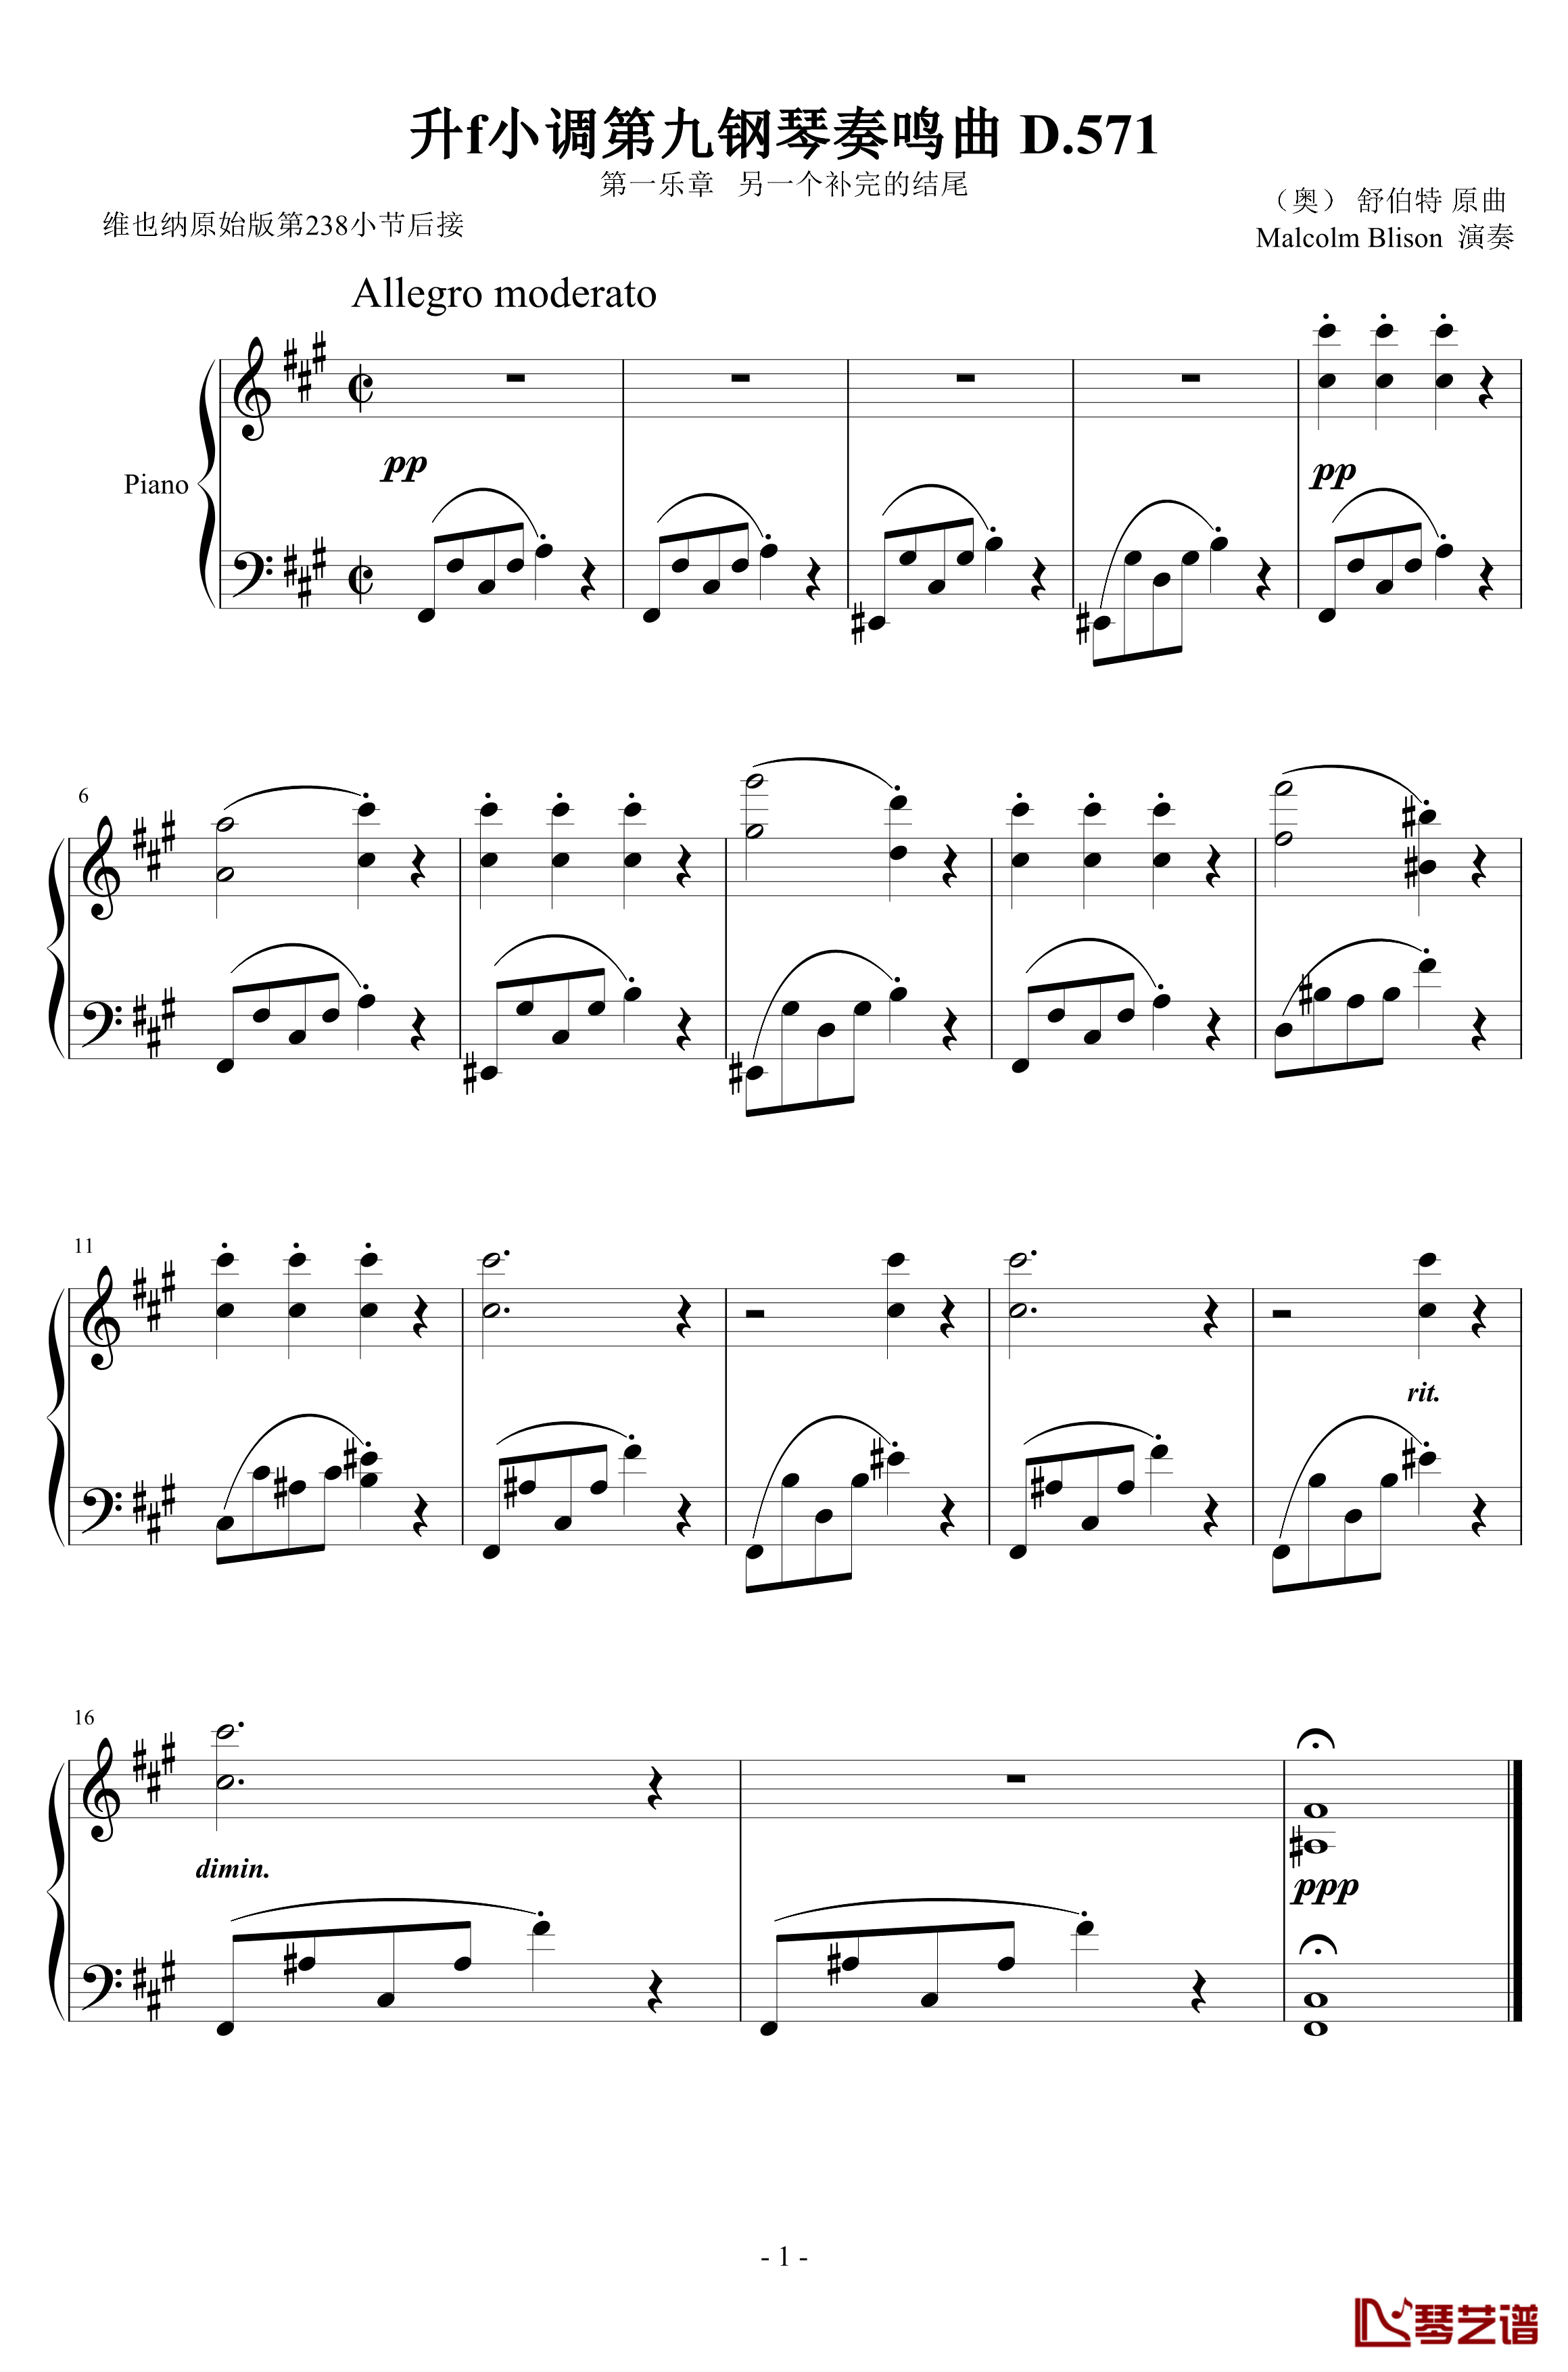 升f小调第九钢琴奏鸣曲D.571钢琴谱-舒伯特-另一个补完的结尾1